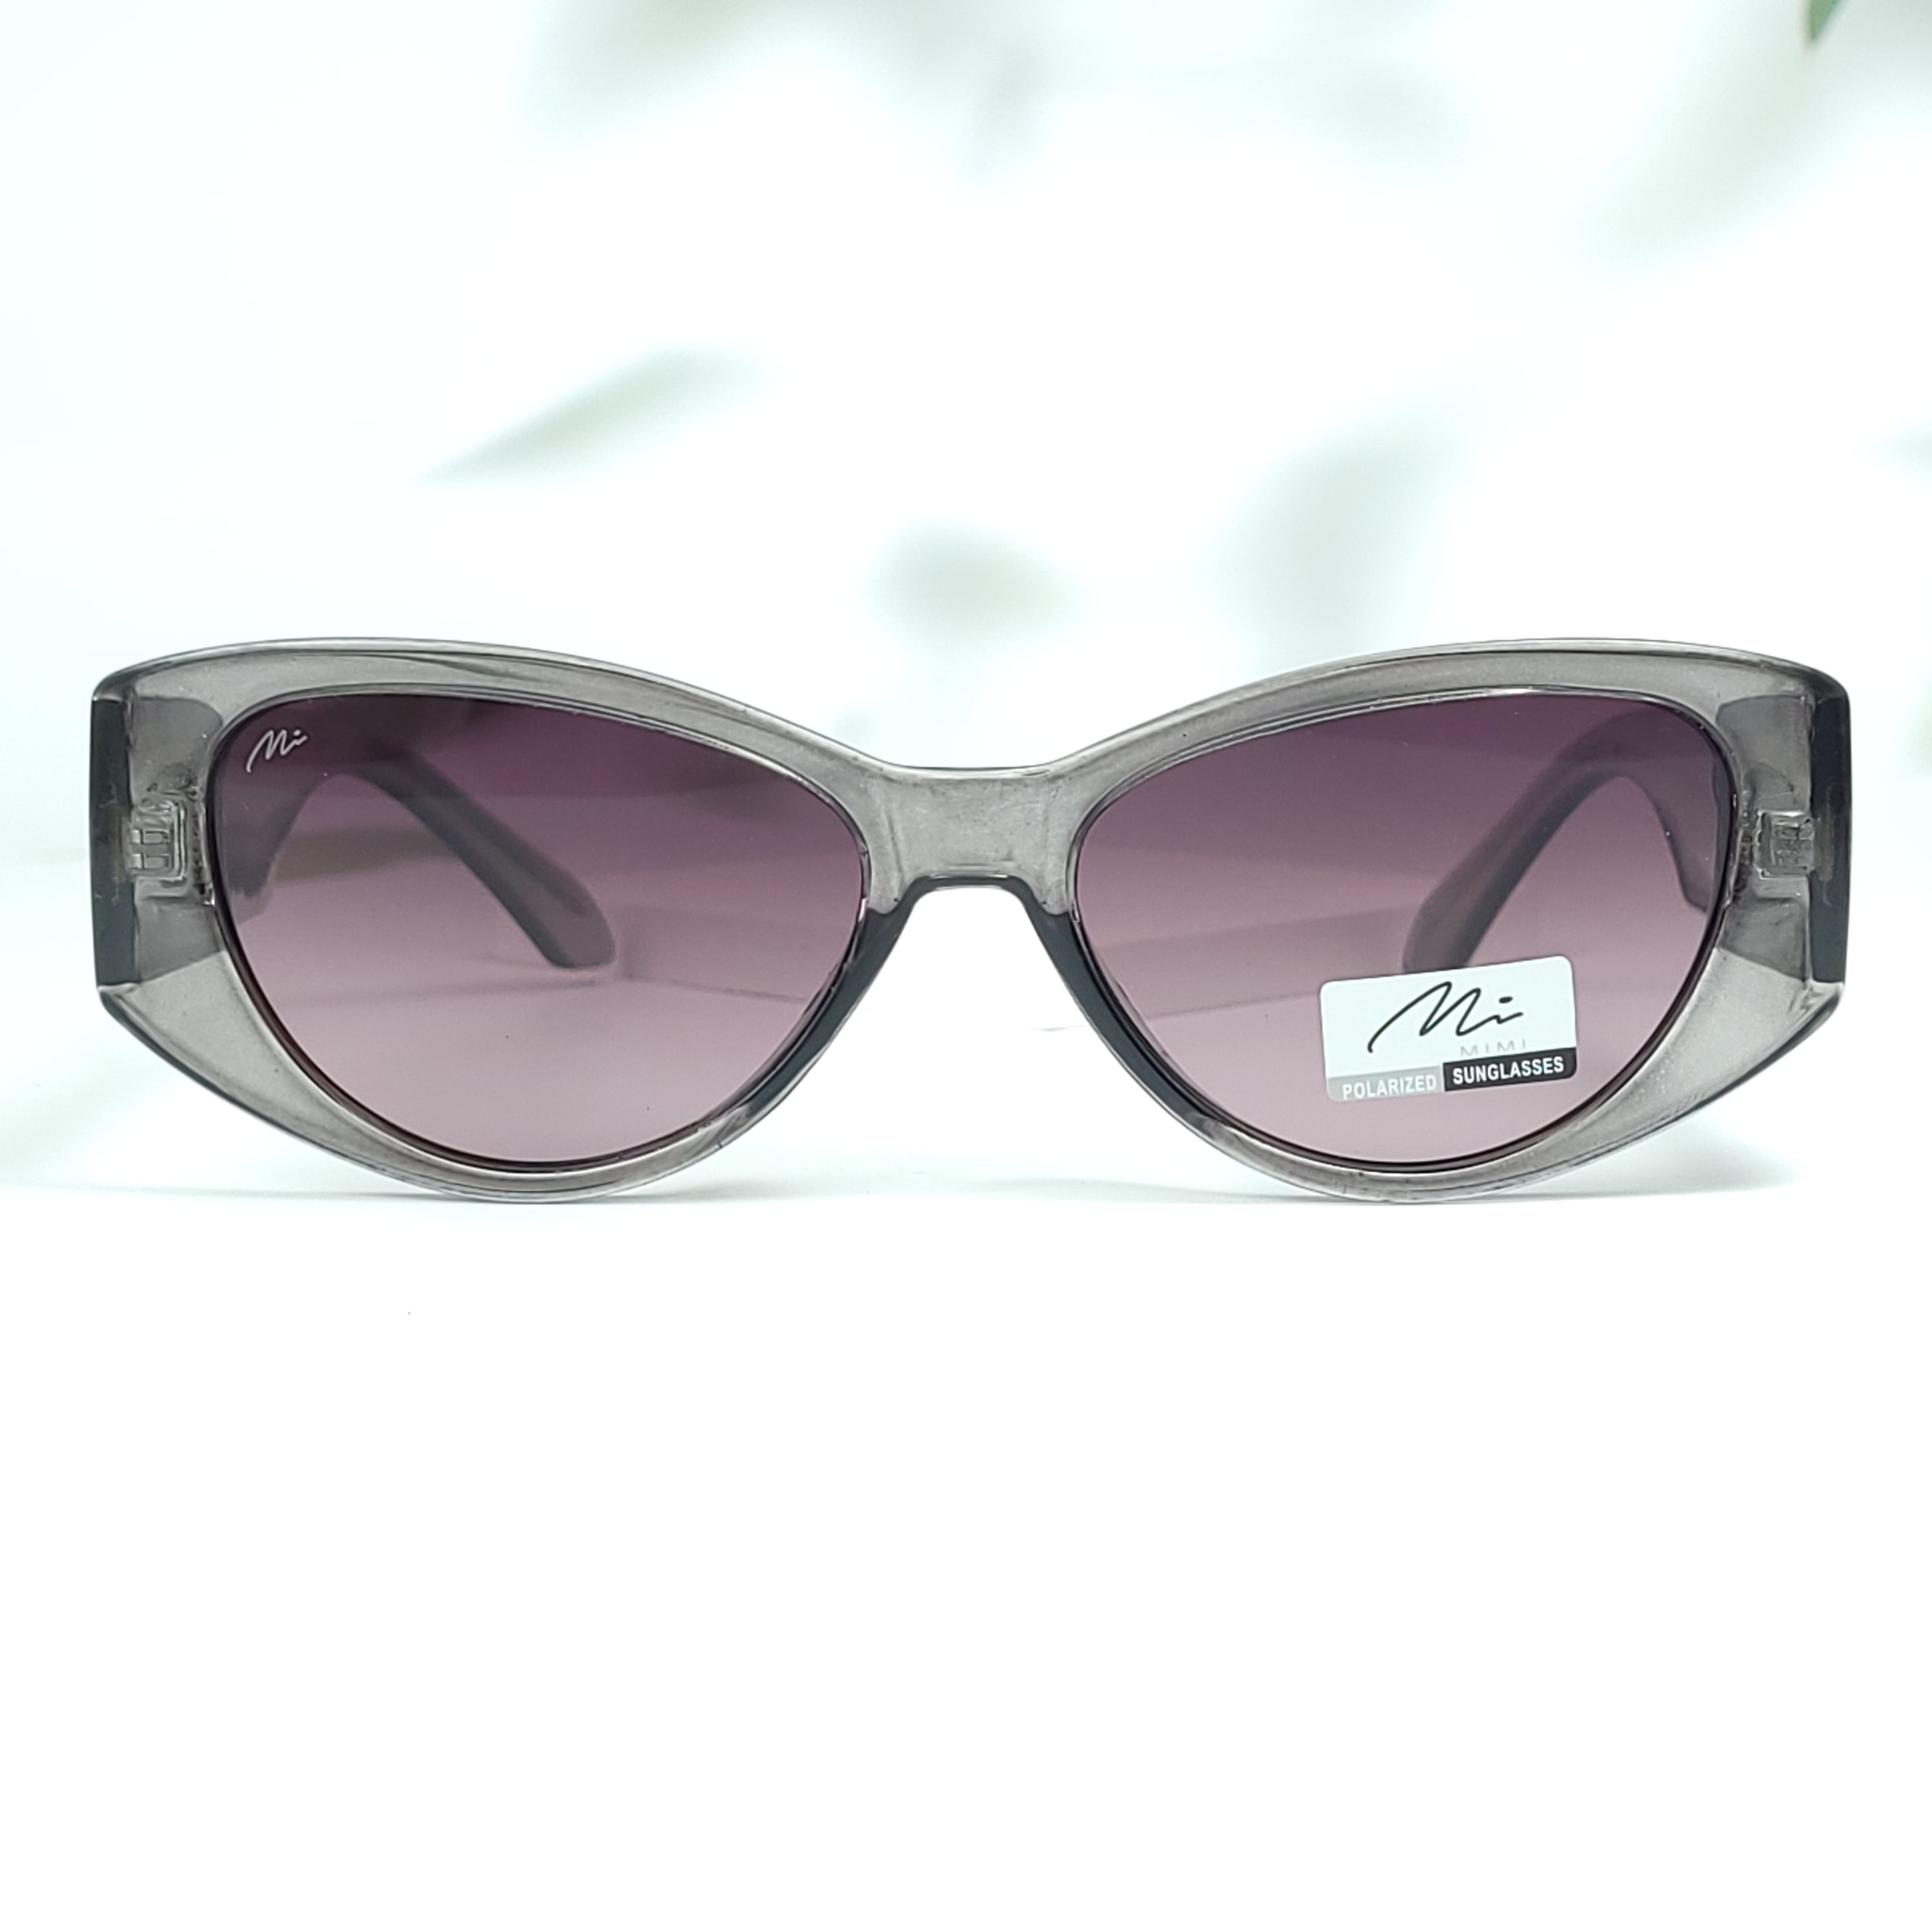 Mimi grey oval polarized sunglasses for women ( gg0019 mi852g c1 )